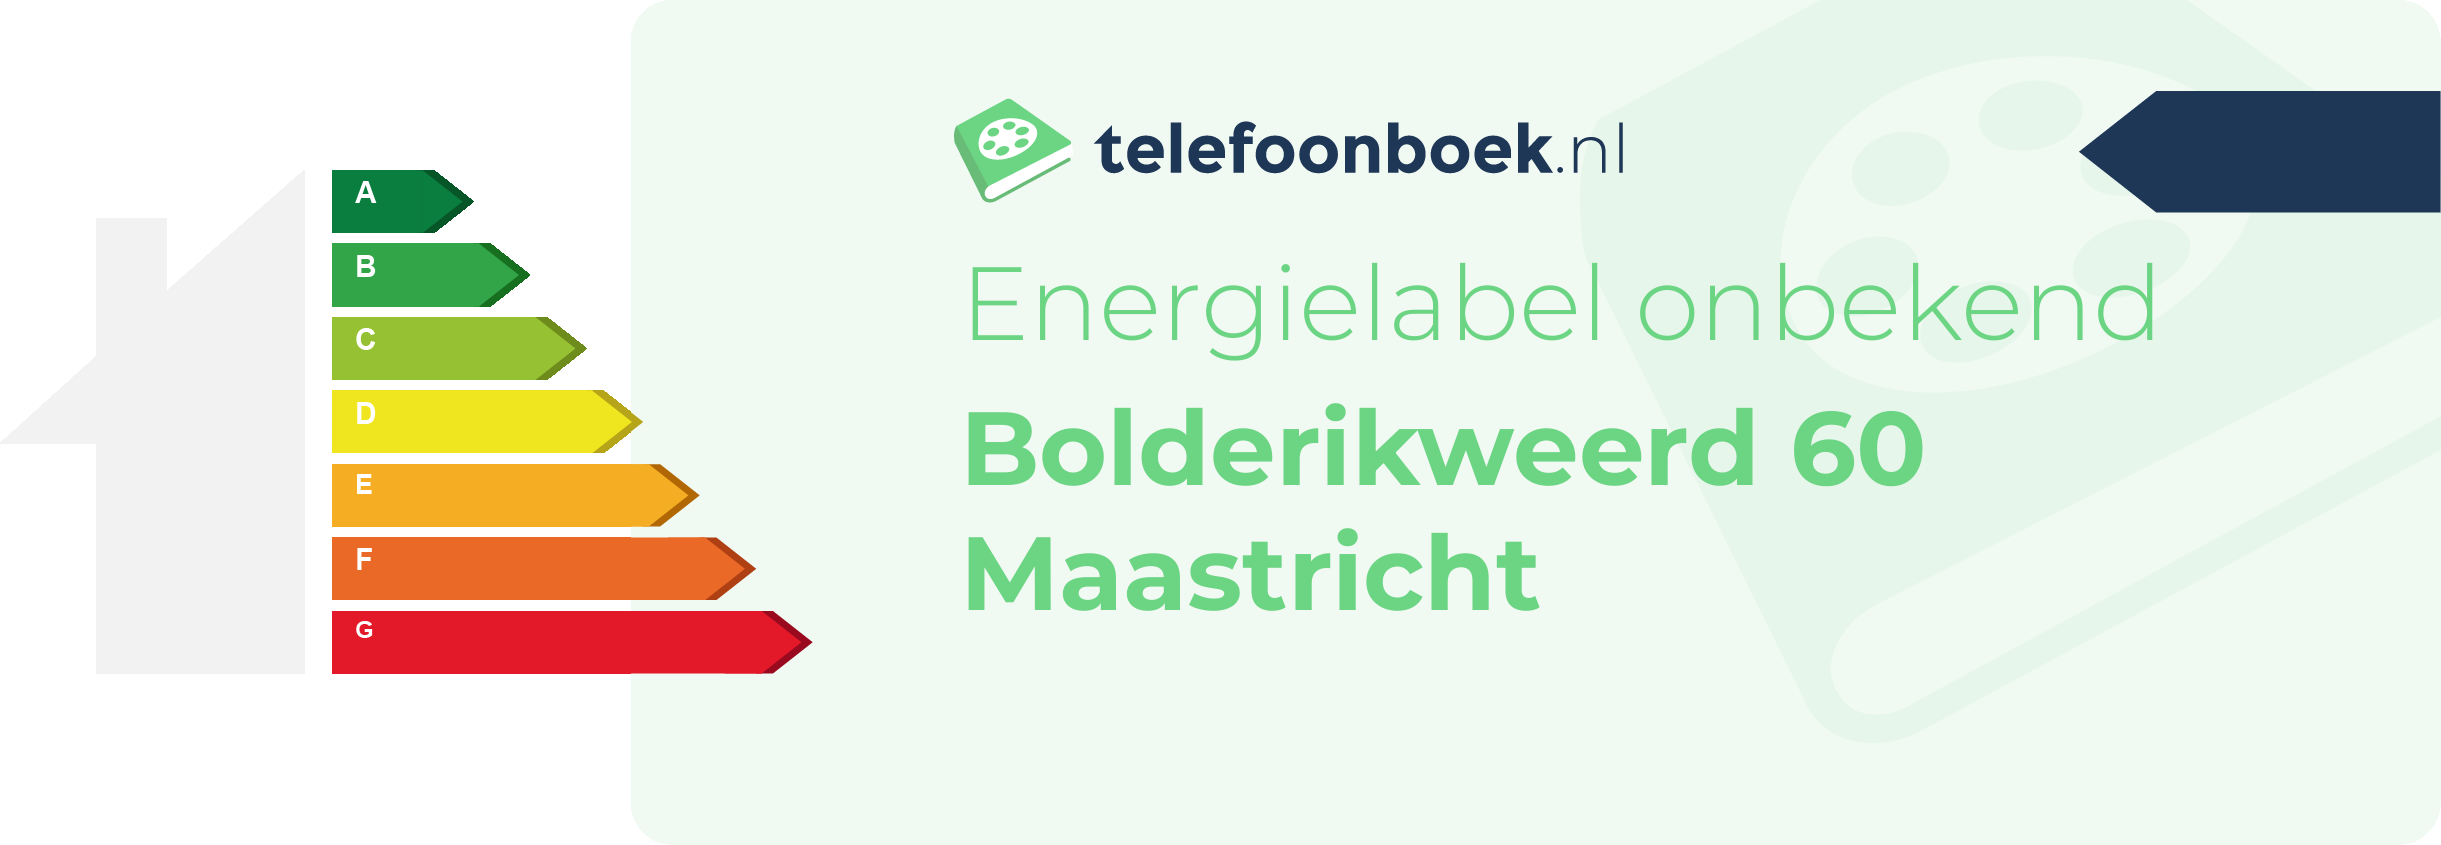 Energielabel Bolderikweerd 60 Maastricht